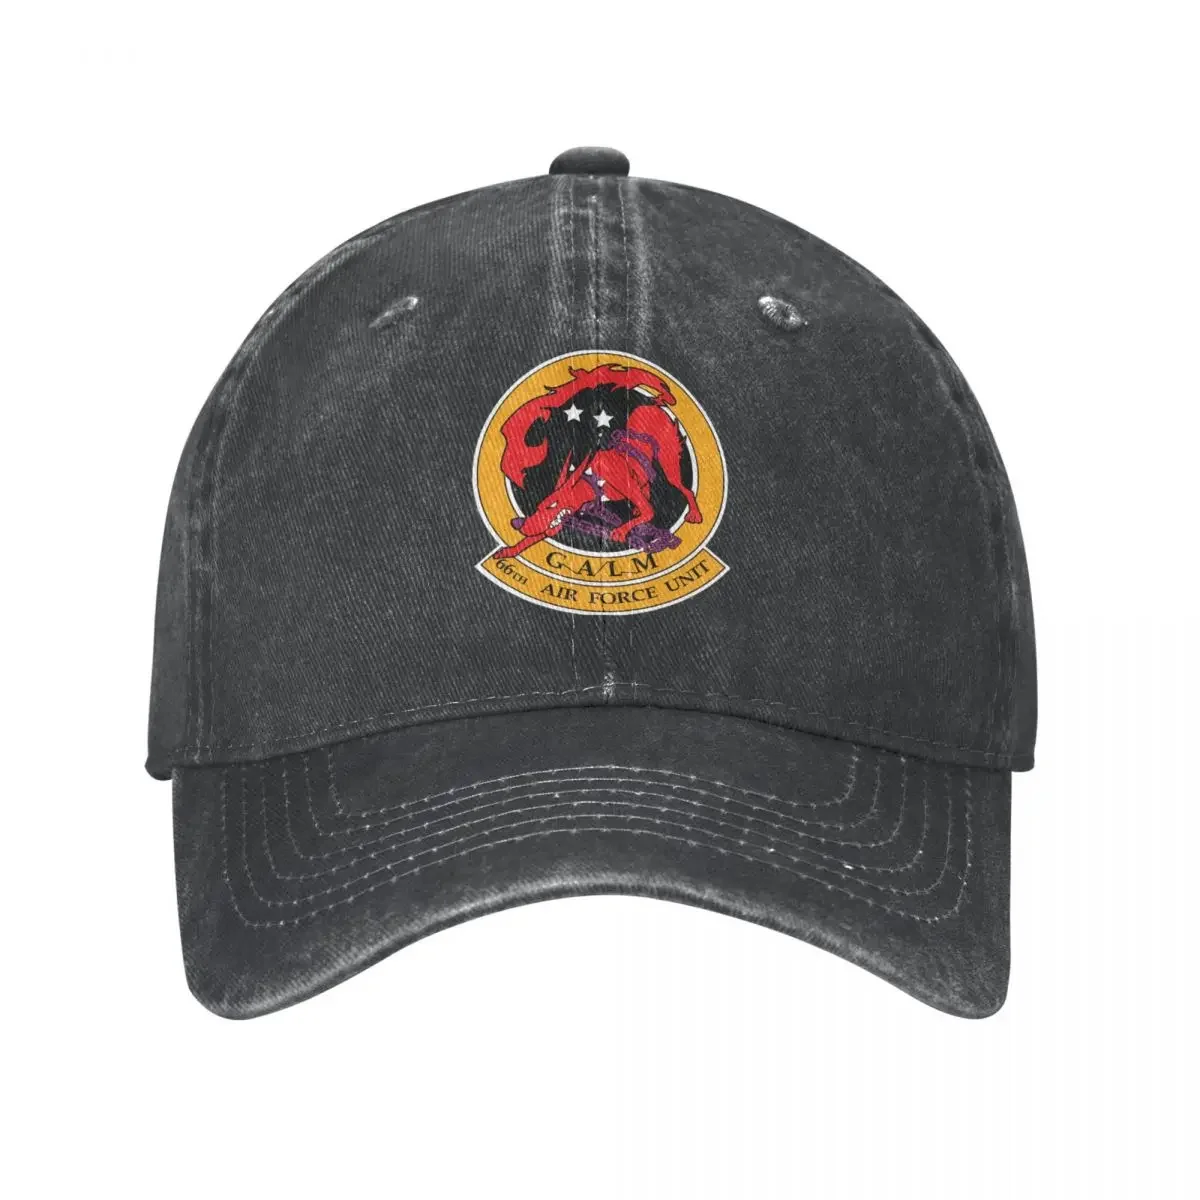 

Ace Боевая бейсболка для команды Galm, трикотажная кепка, ковбойские головные уборы для младенцев, мужские и женские головные уборы